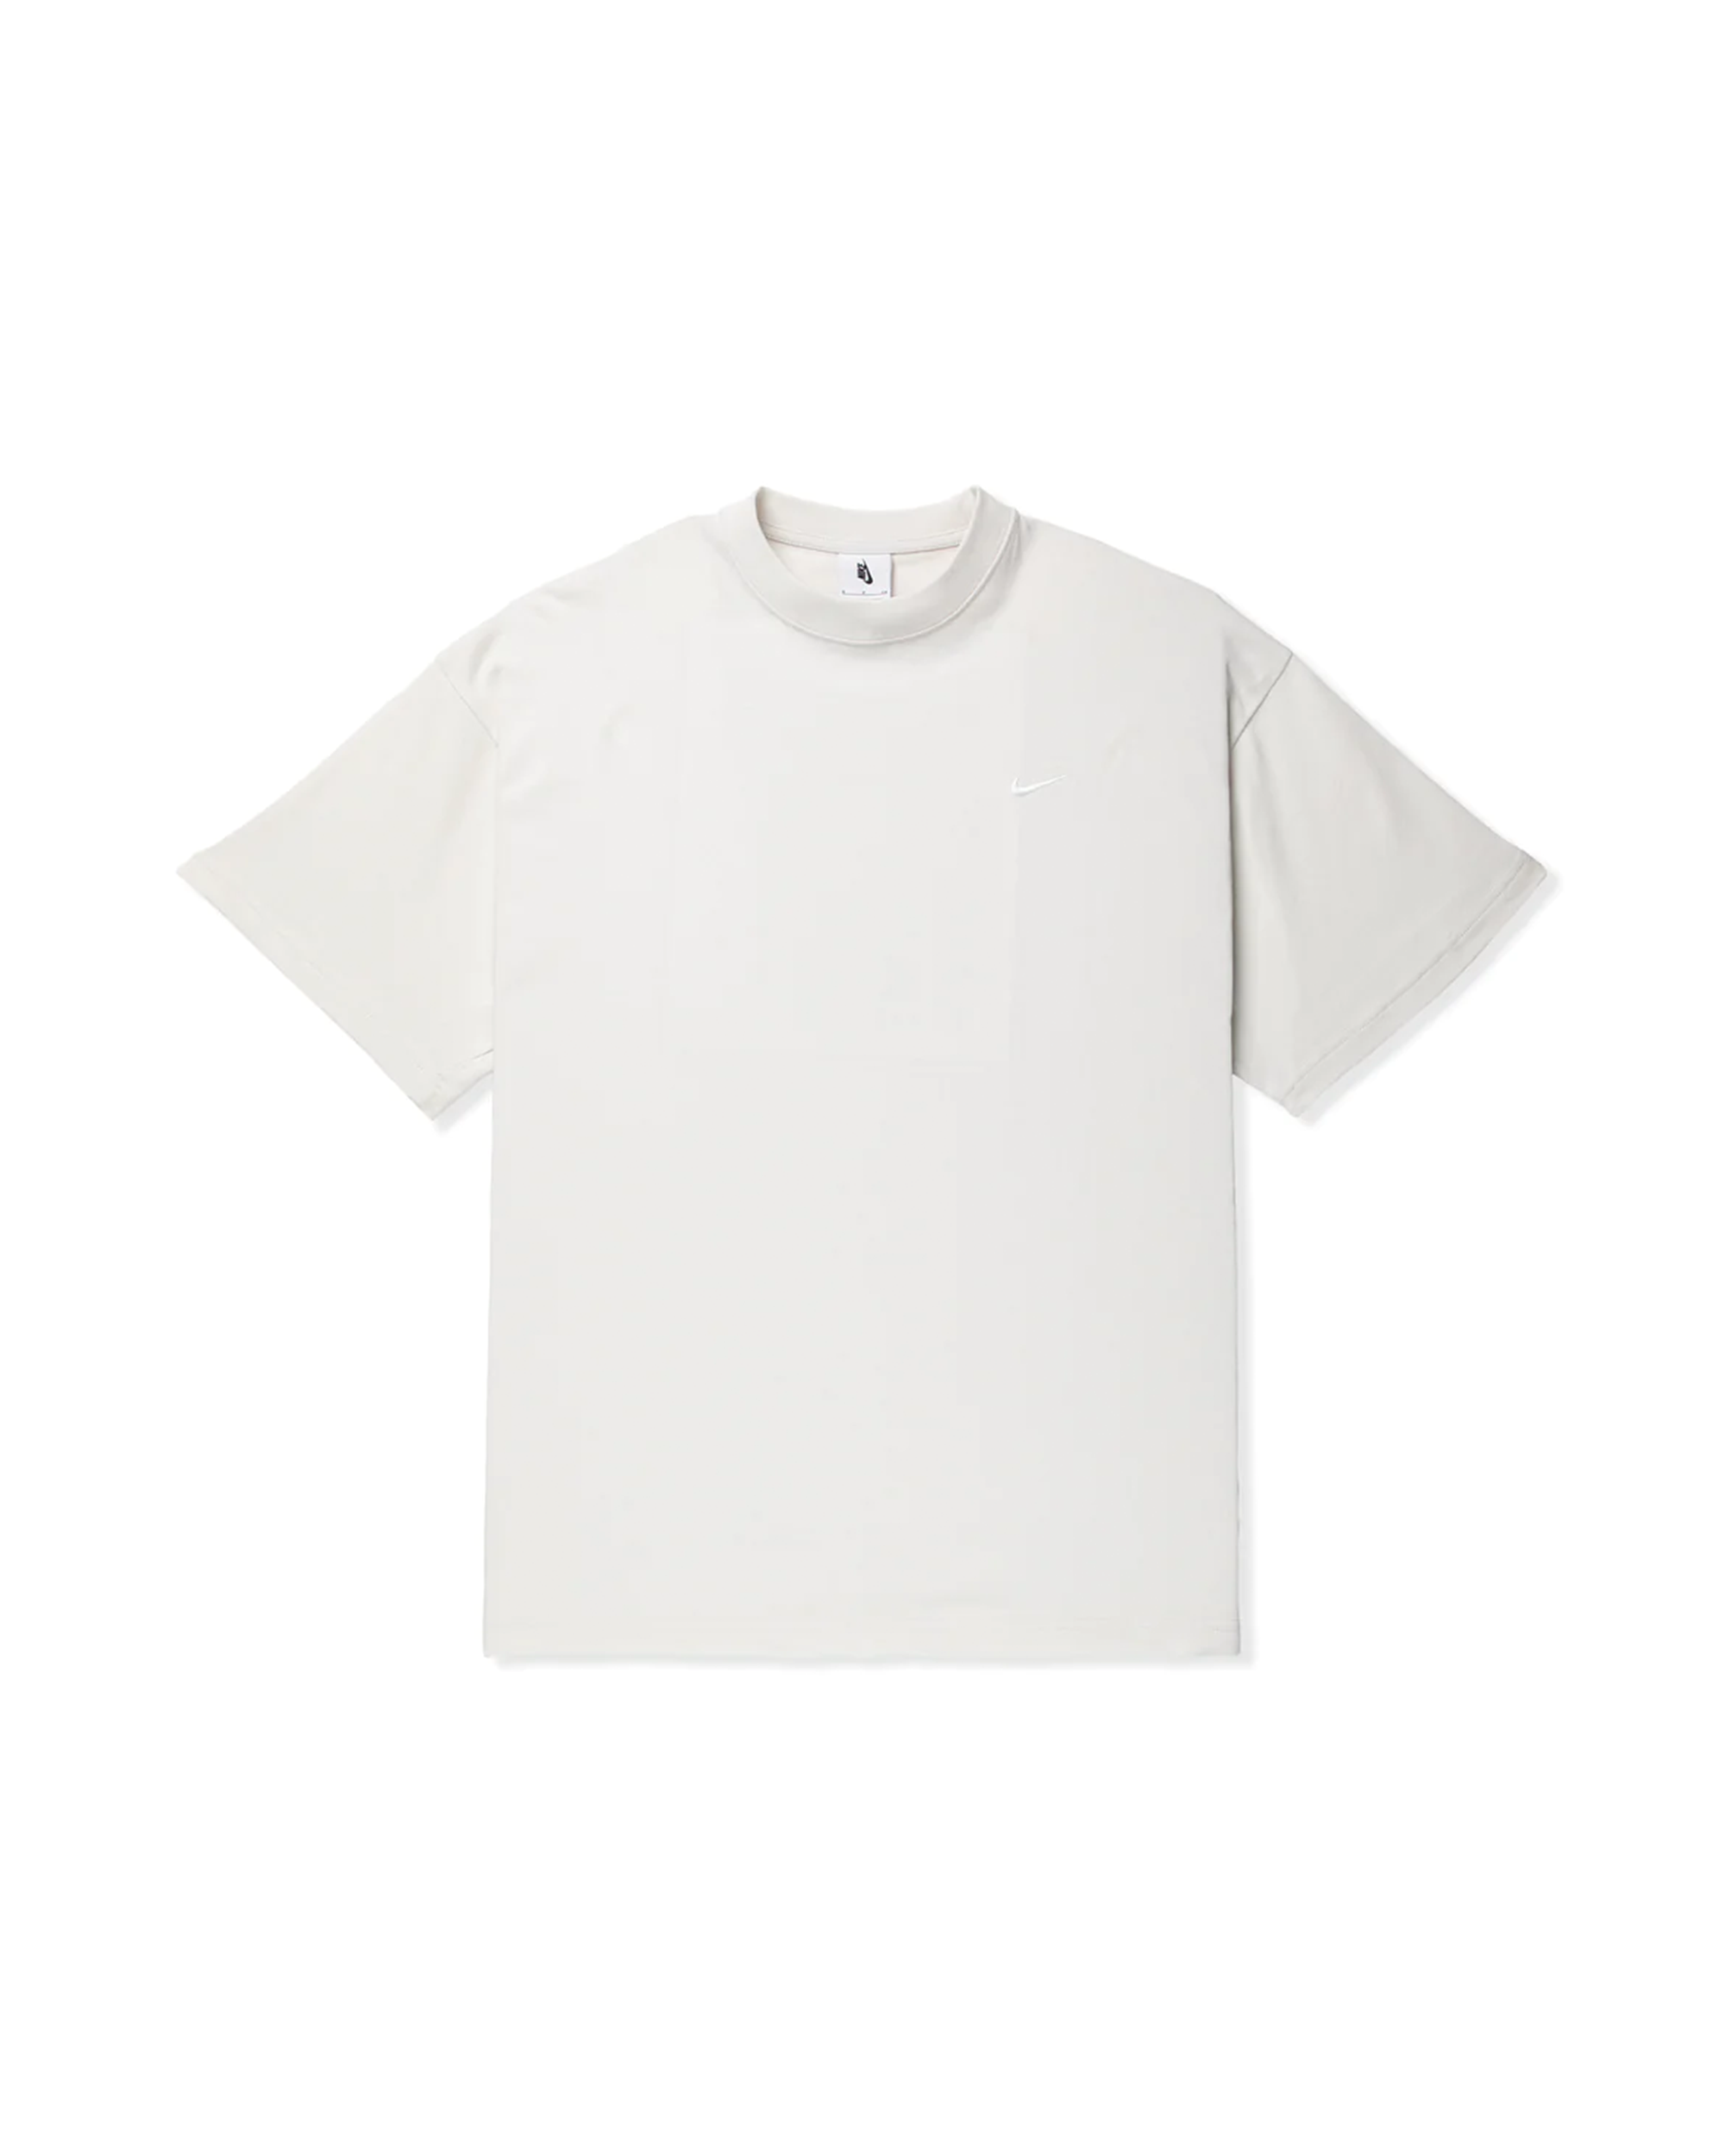 Solo Swoosh T-Shirt - Phantom / White